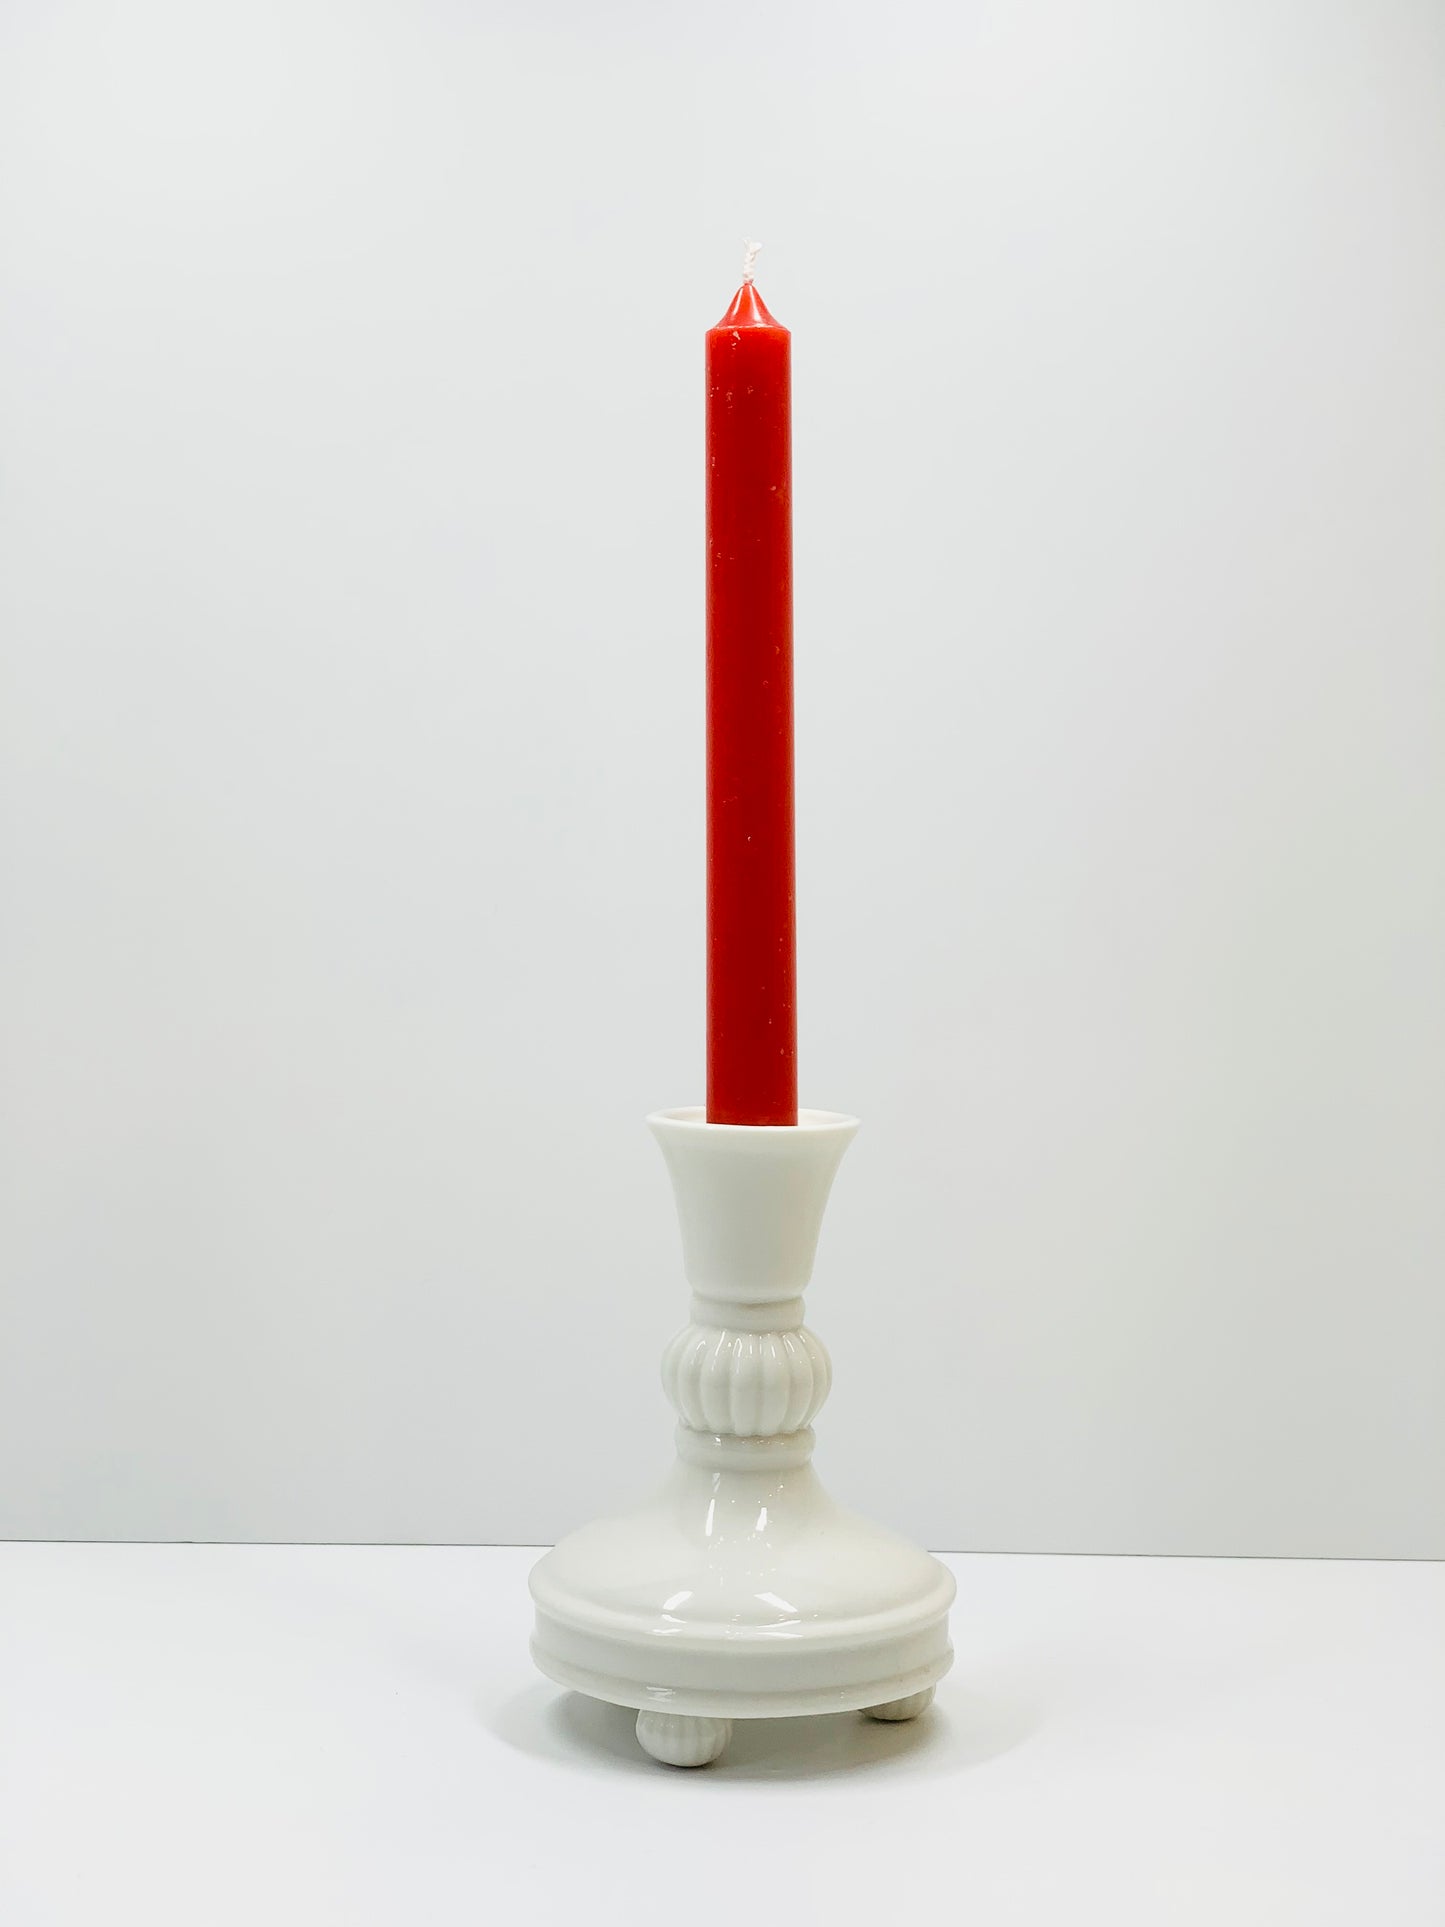 Vintage Villeroy & Boch white porcelain candle holder